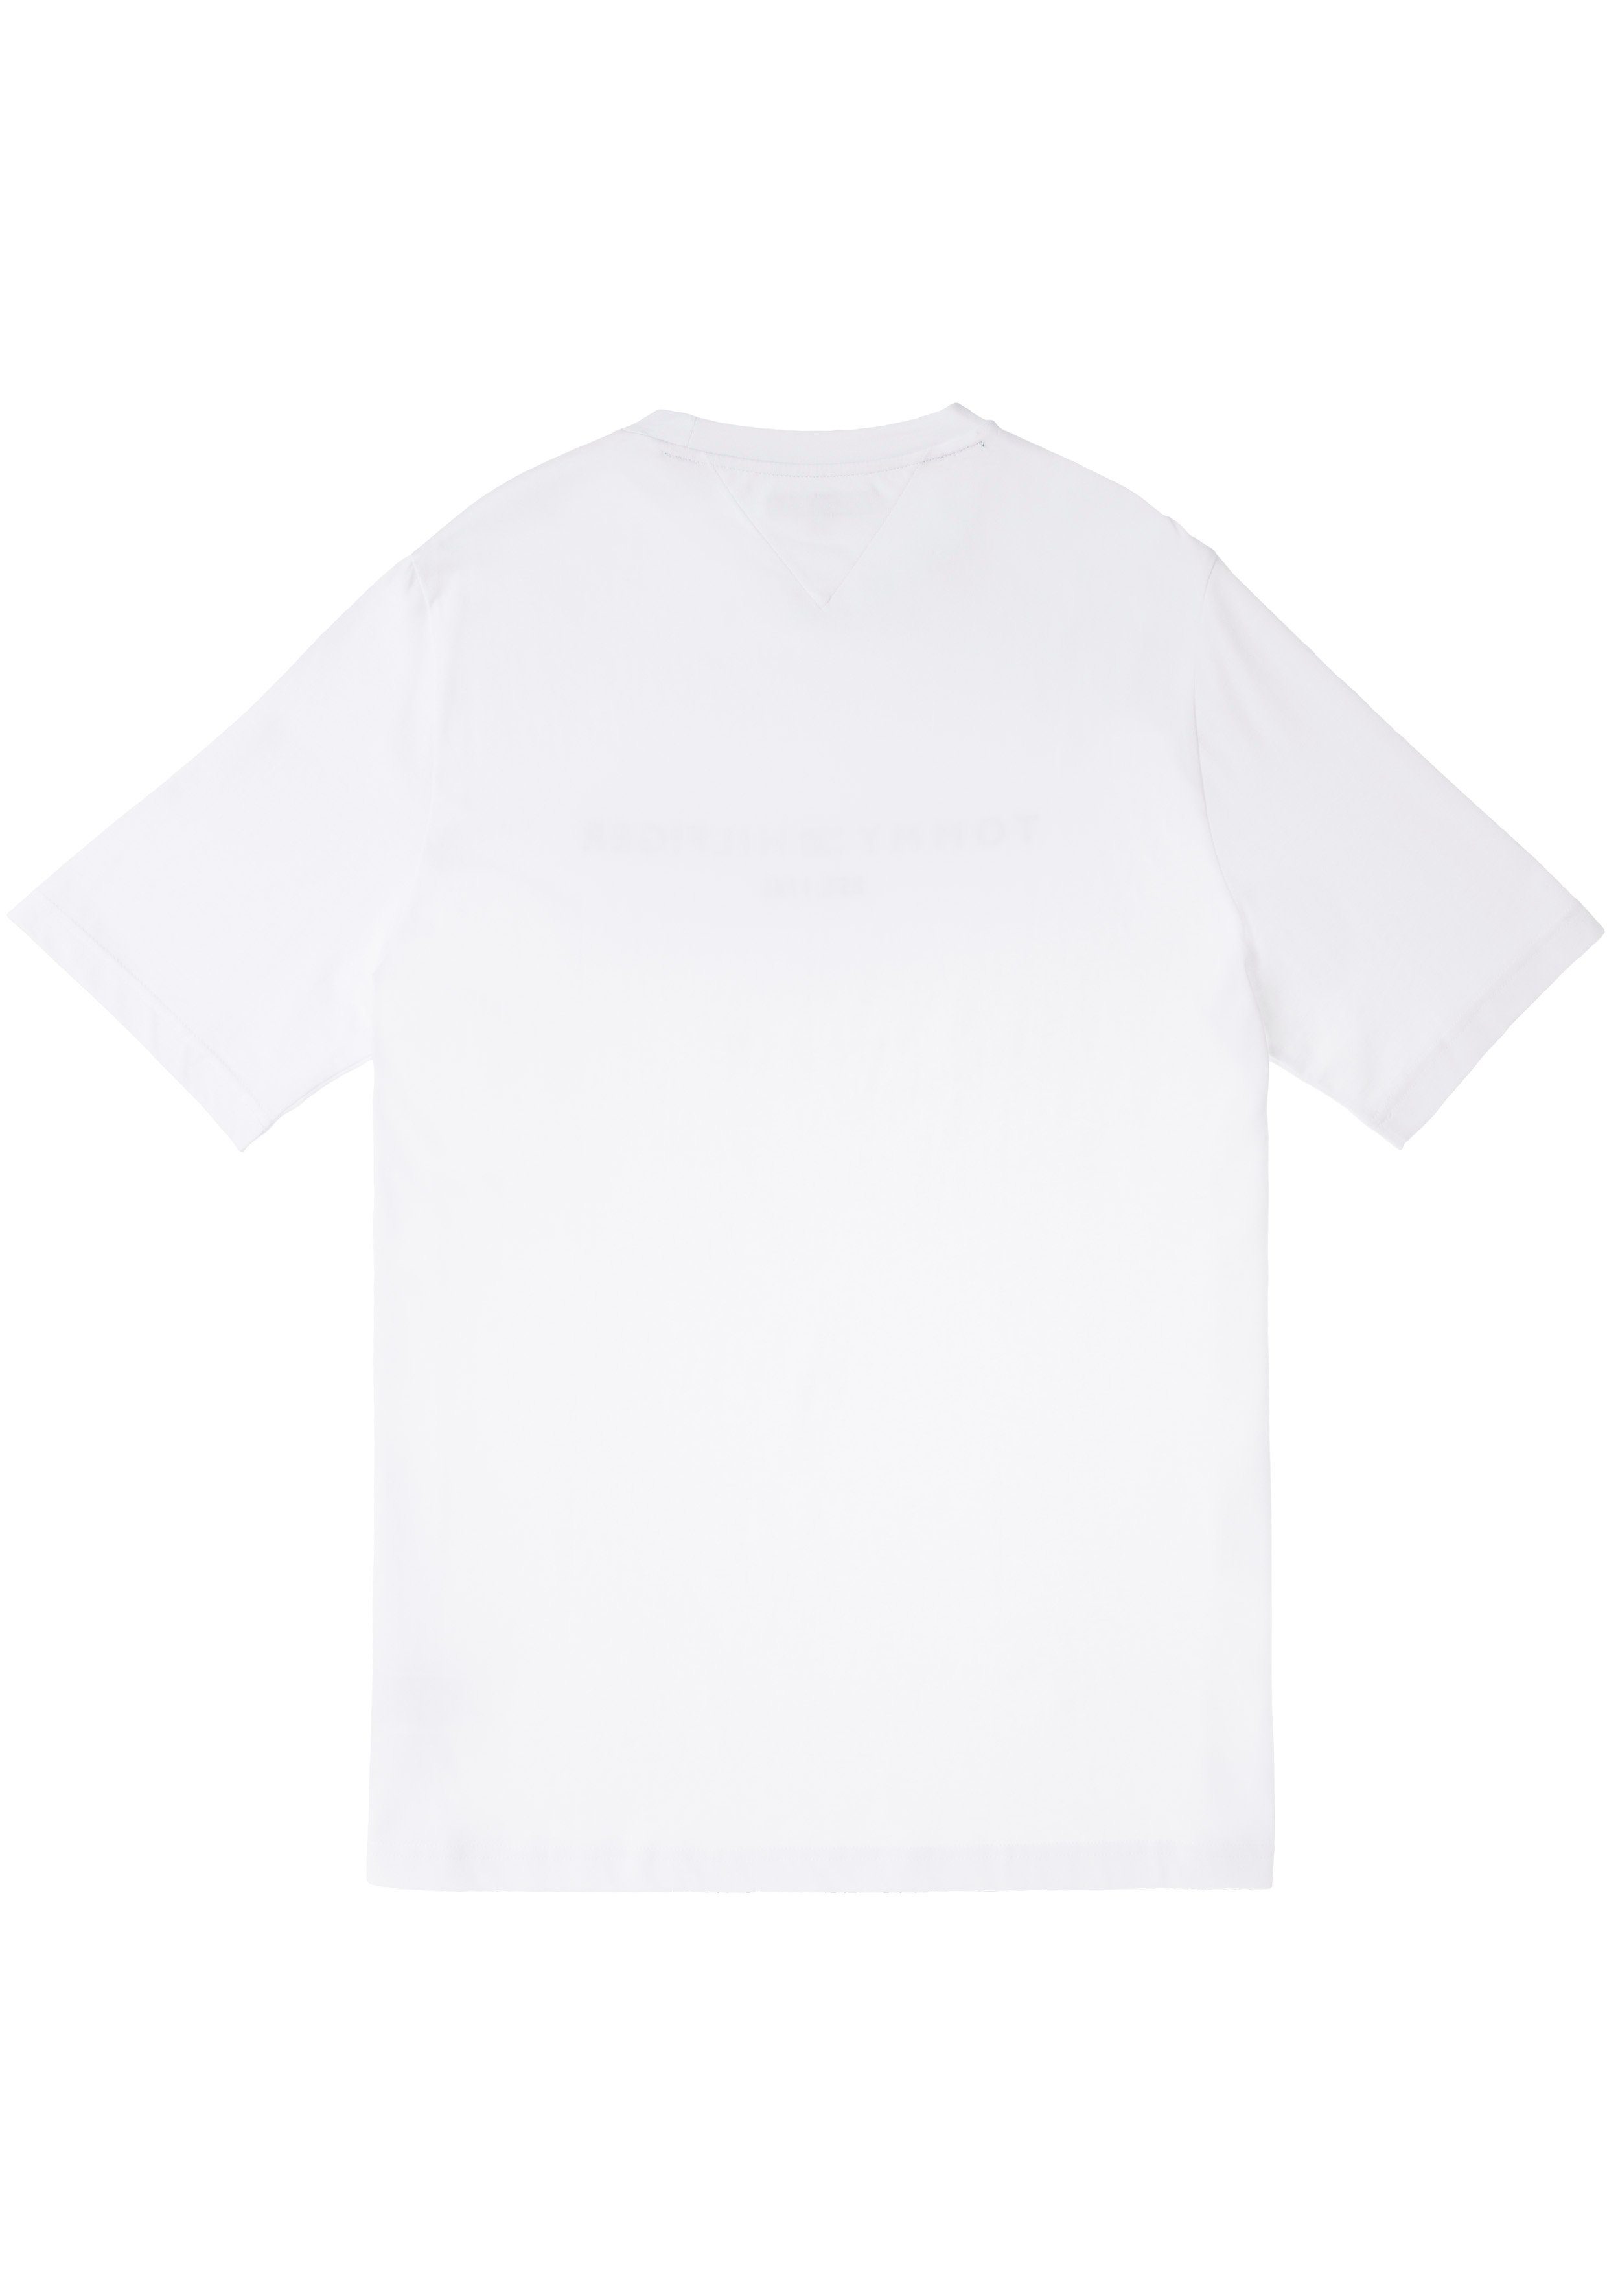 Hilfiger der Tall T-Shirt BT-TOMMY mit weiß auf & TEE-B Brust Tommy Tommy Hilfiger LOGO Logoschriftzug Big